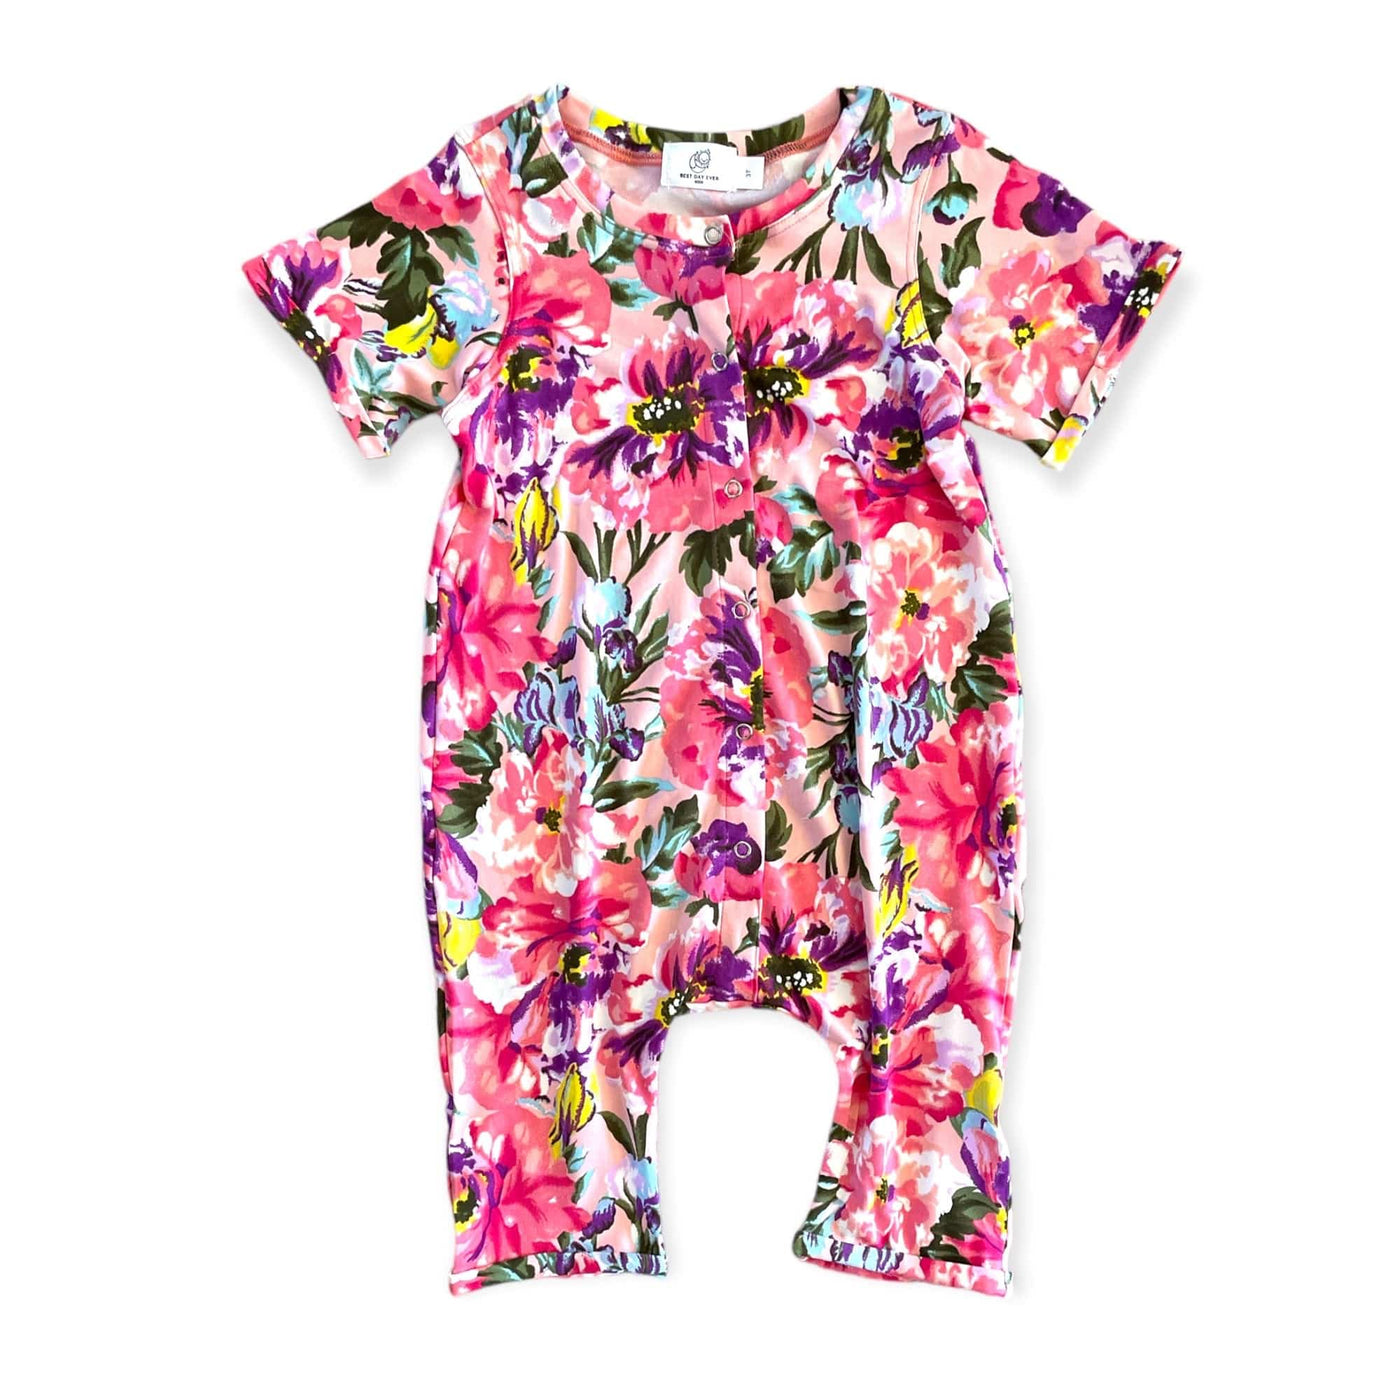 Best Day Ever Kids Baby & Toddler Outfits La Vie En Rose Bell Harem Romper - Pink buy online boutique kids clothing